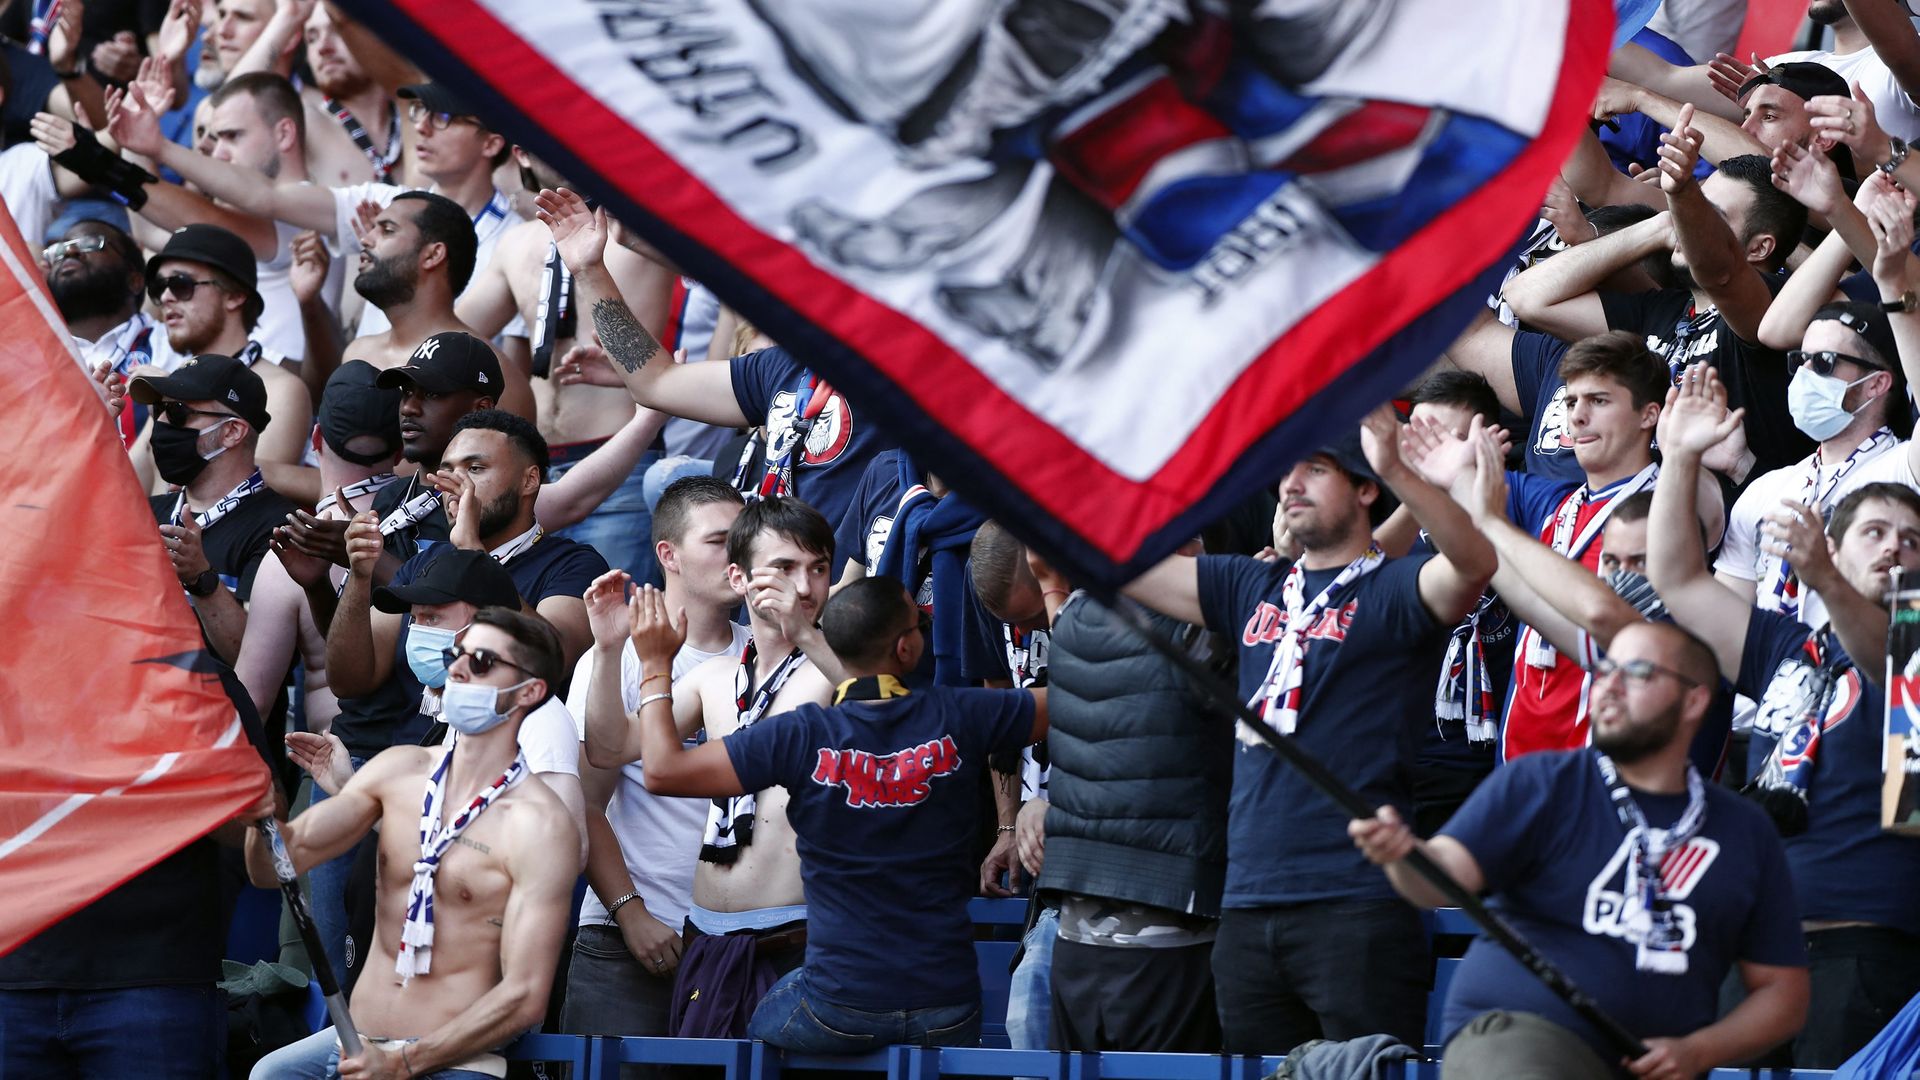 PSG : les supporters privés de déplacement pour le match à Lyon